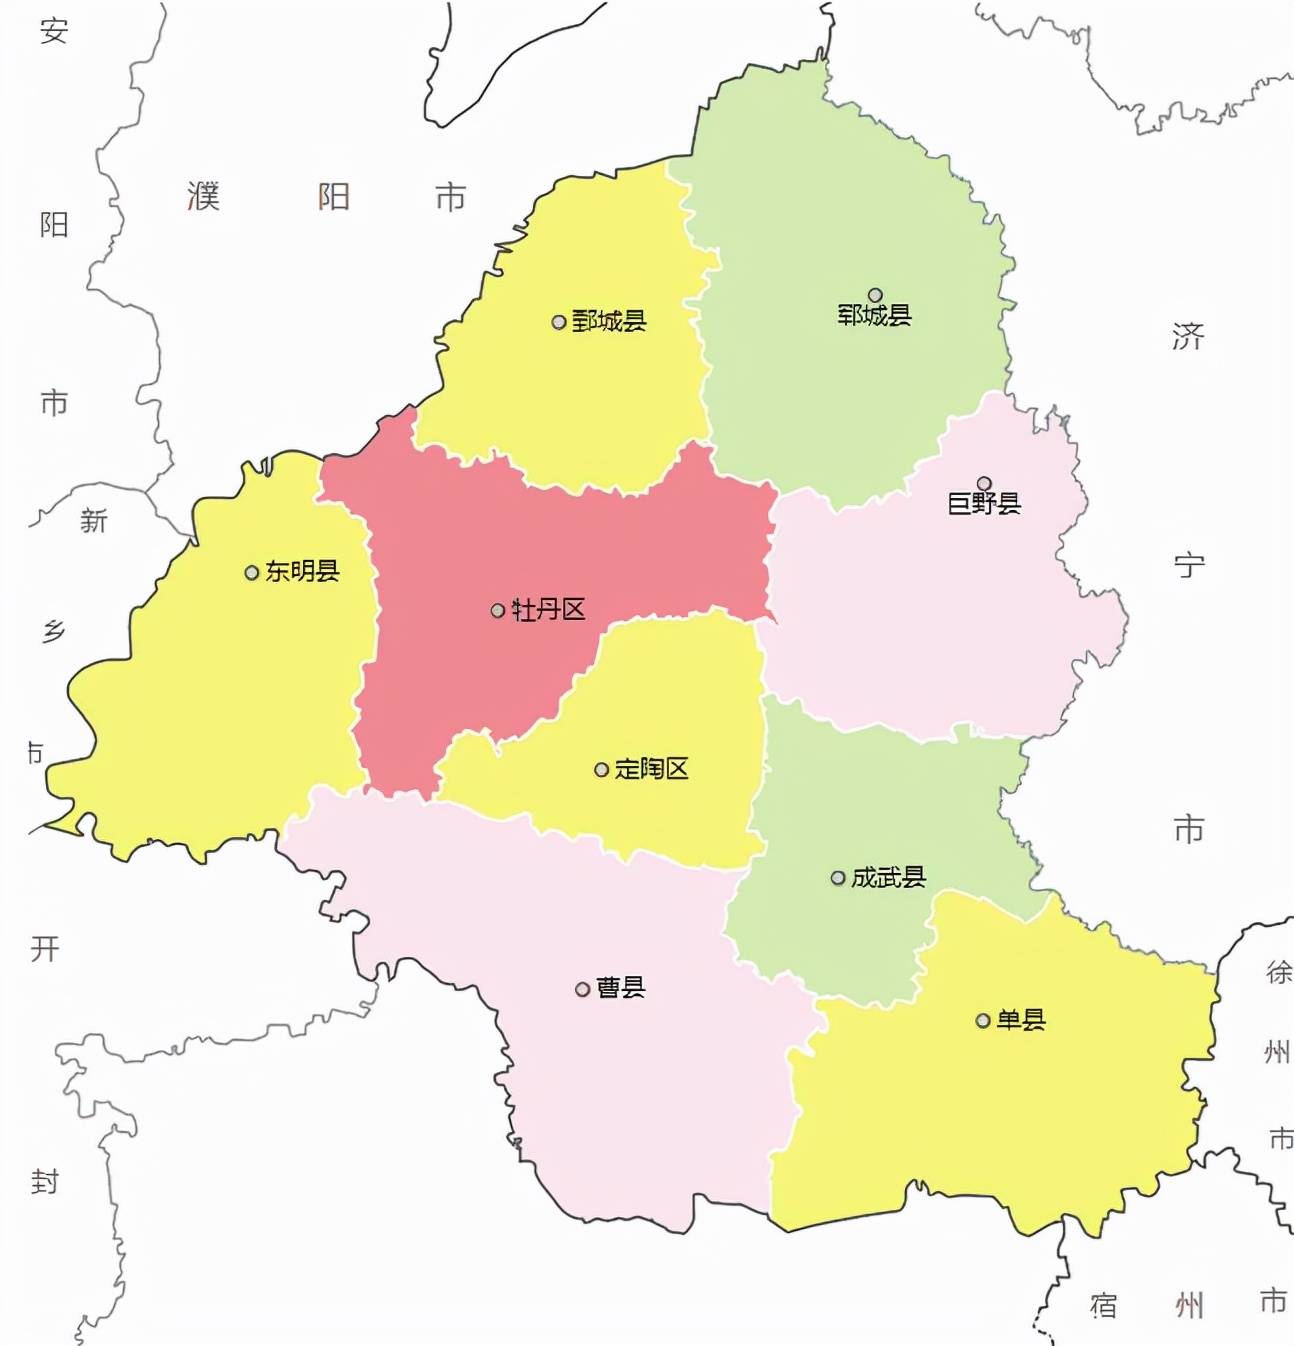 山东省的区划调整16个地级市之一菏泽市为何有9个区县